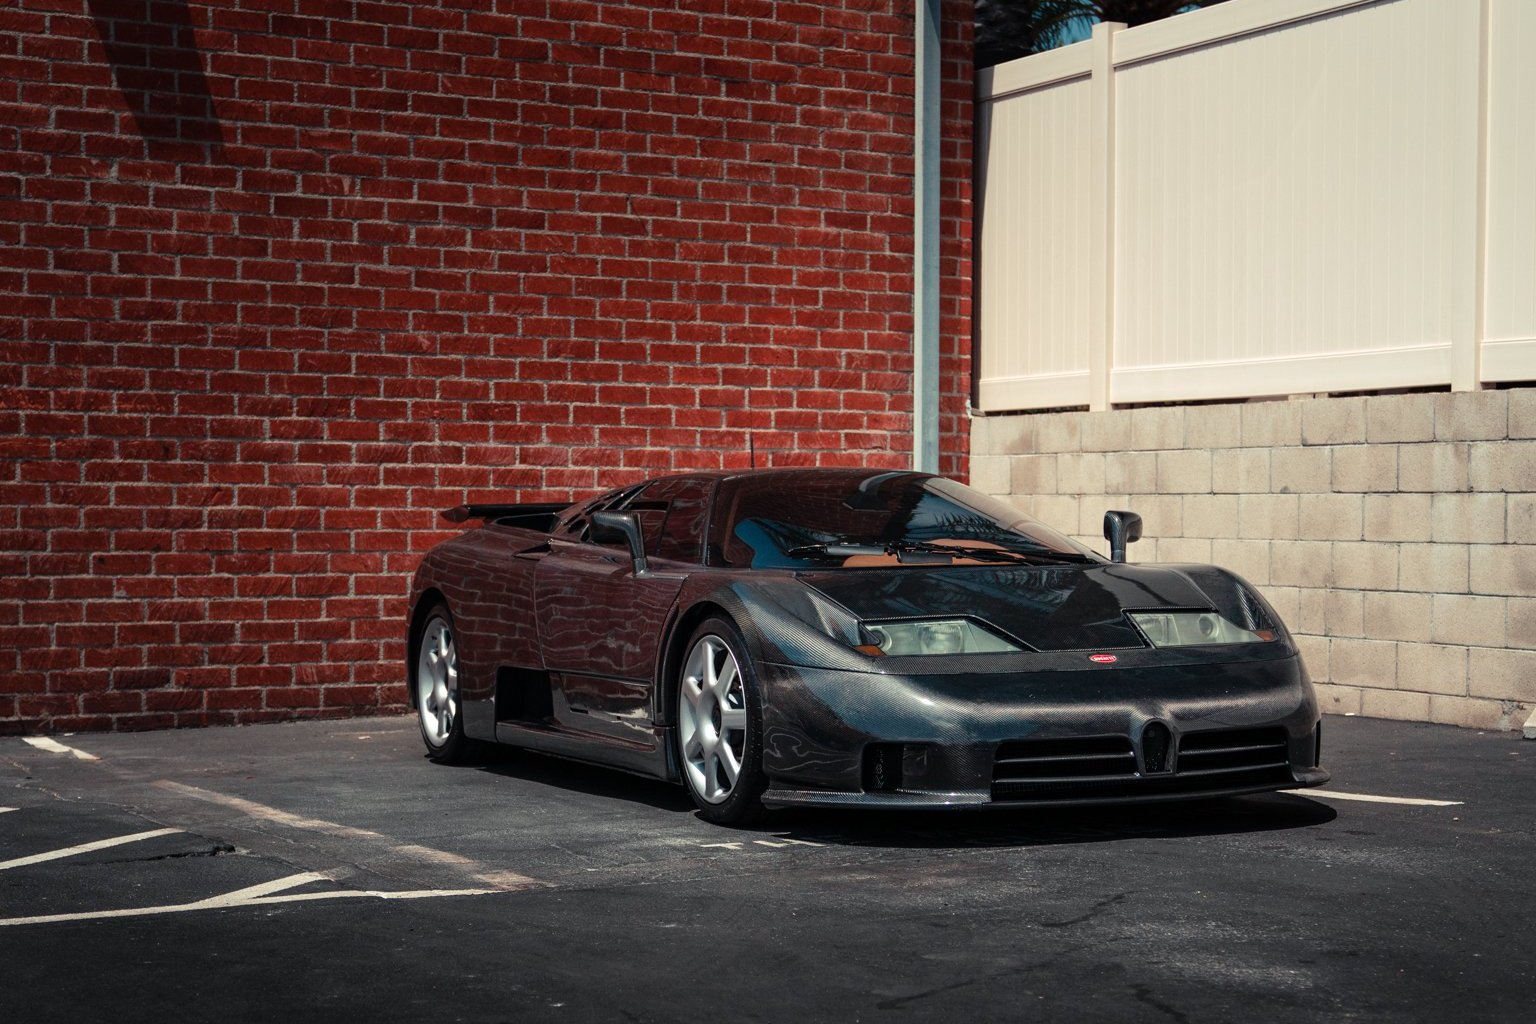 Meztelen Bugattit ritkán látni, ez az egy létezik 3